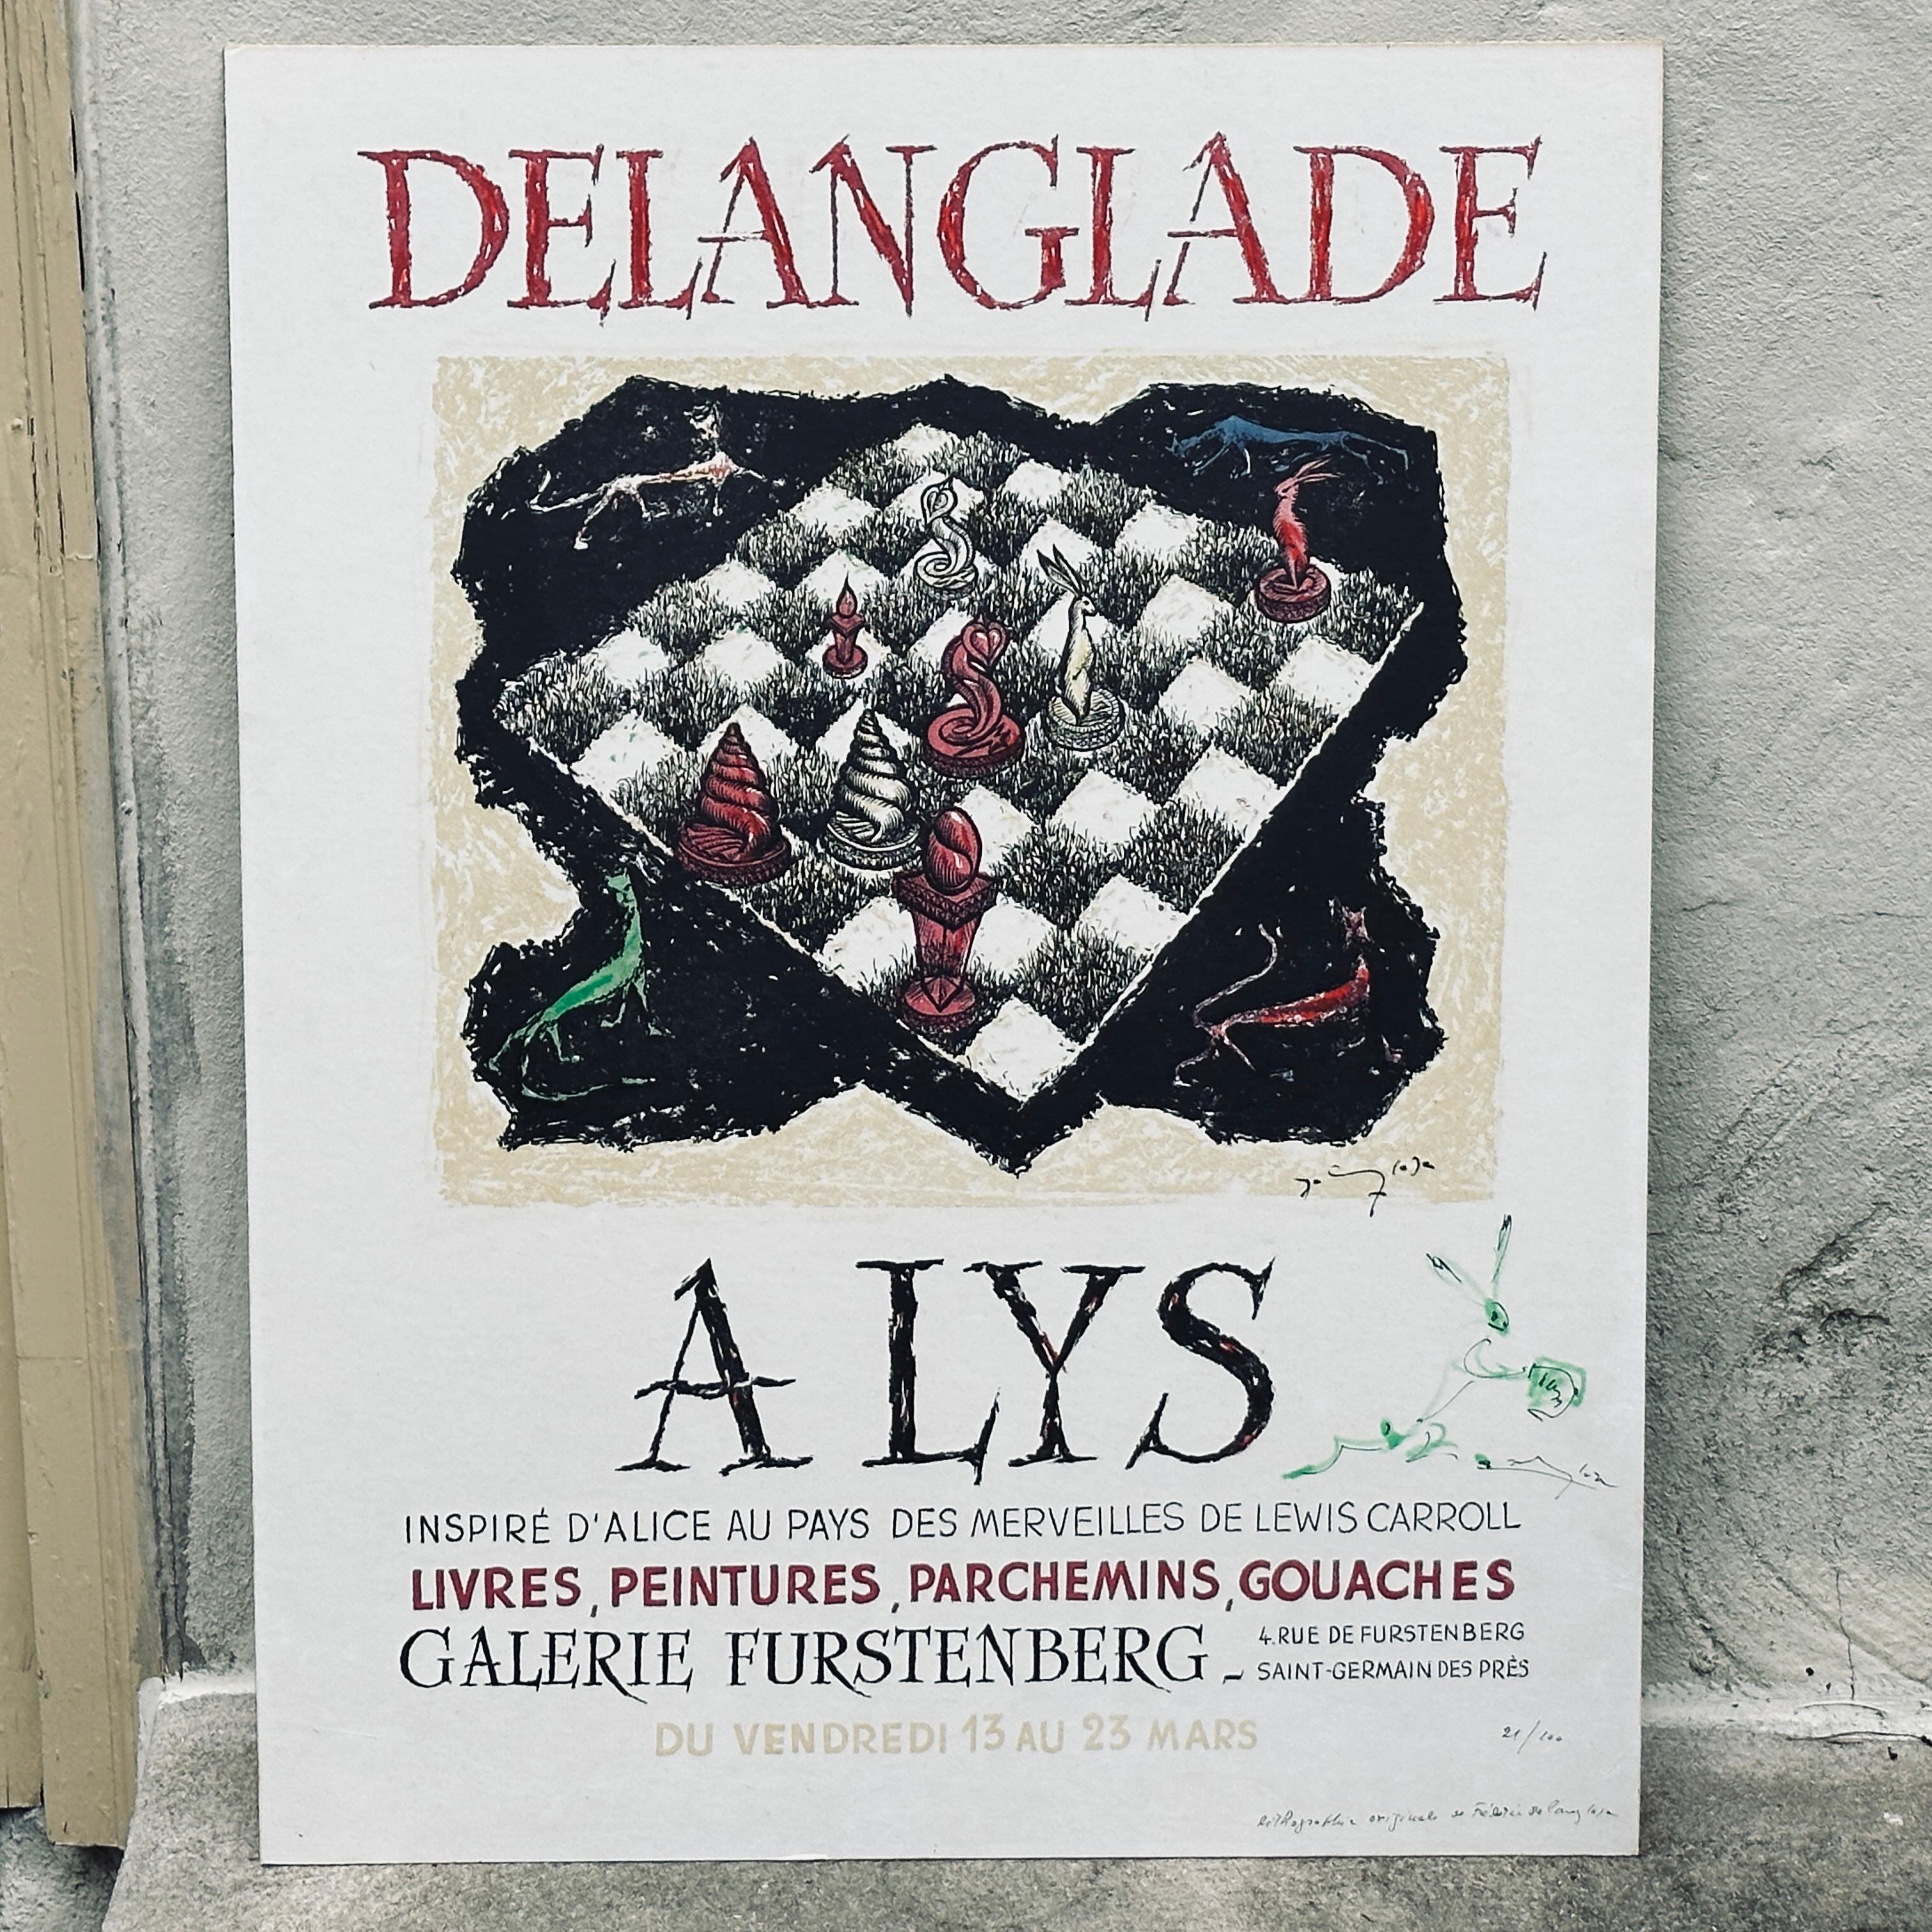 Original französische Lithographie von Frédéric Delanglade (1907-1970) handsigniert und nummeriert. Plakat der Galerie Furstenberg für die surrealistischen Kunstwerke von Delanglade, inspiriert von Lewis Carrolls Alice im Wunderland. Wir haben es